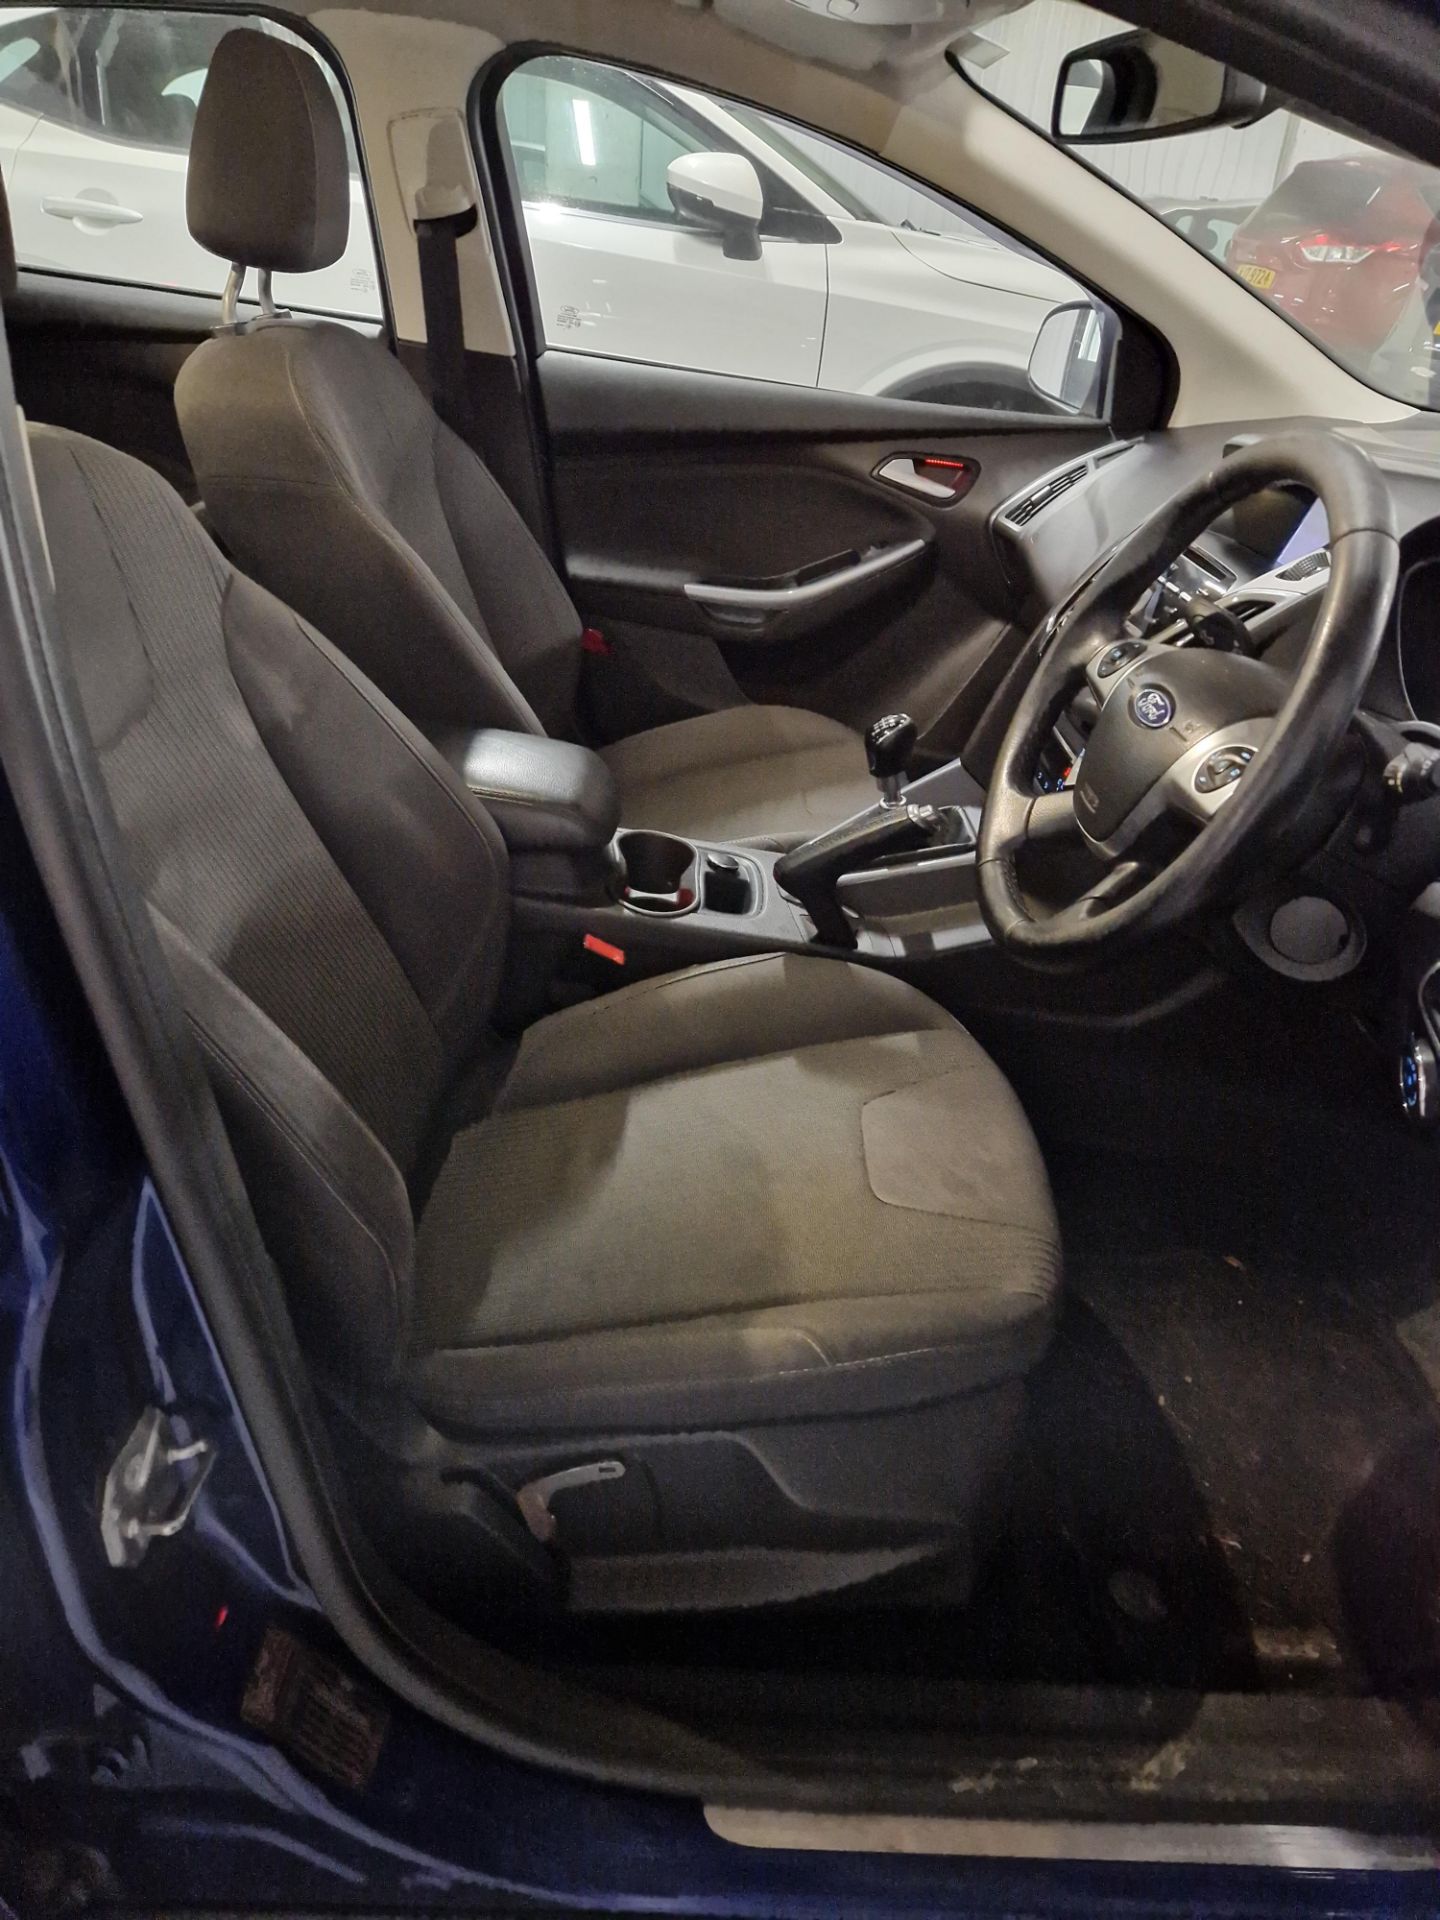 Ford Focus 1.6 TDCi 115 Titanium Navigator 5dr Diesel Hatchback, Registration No. BG63 BCY, Mileage: - Bild 5 aus 8